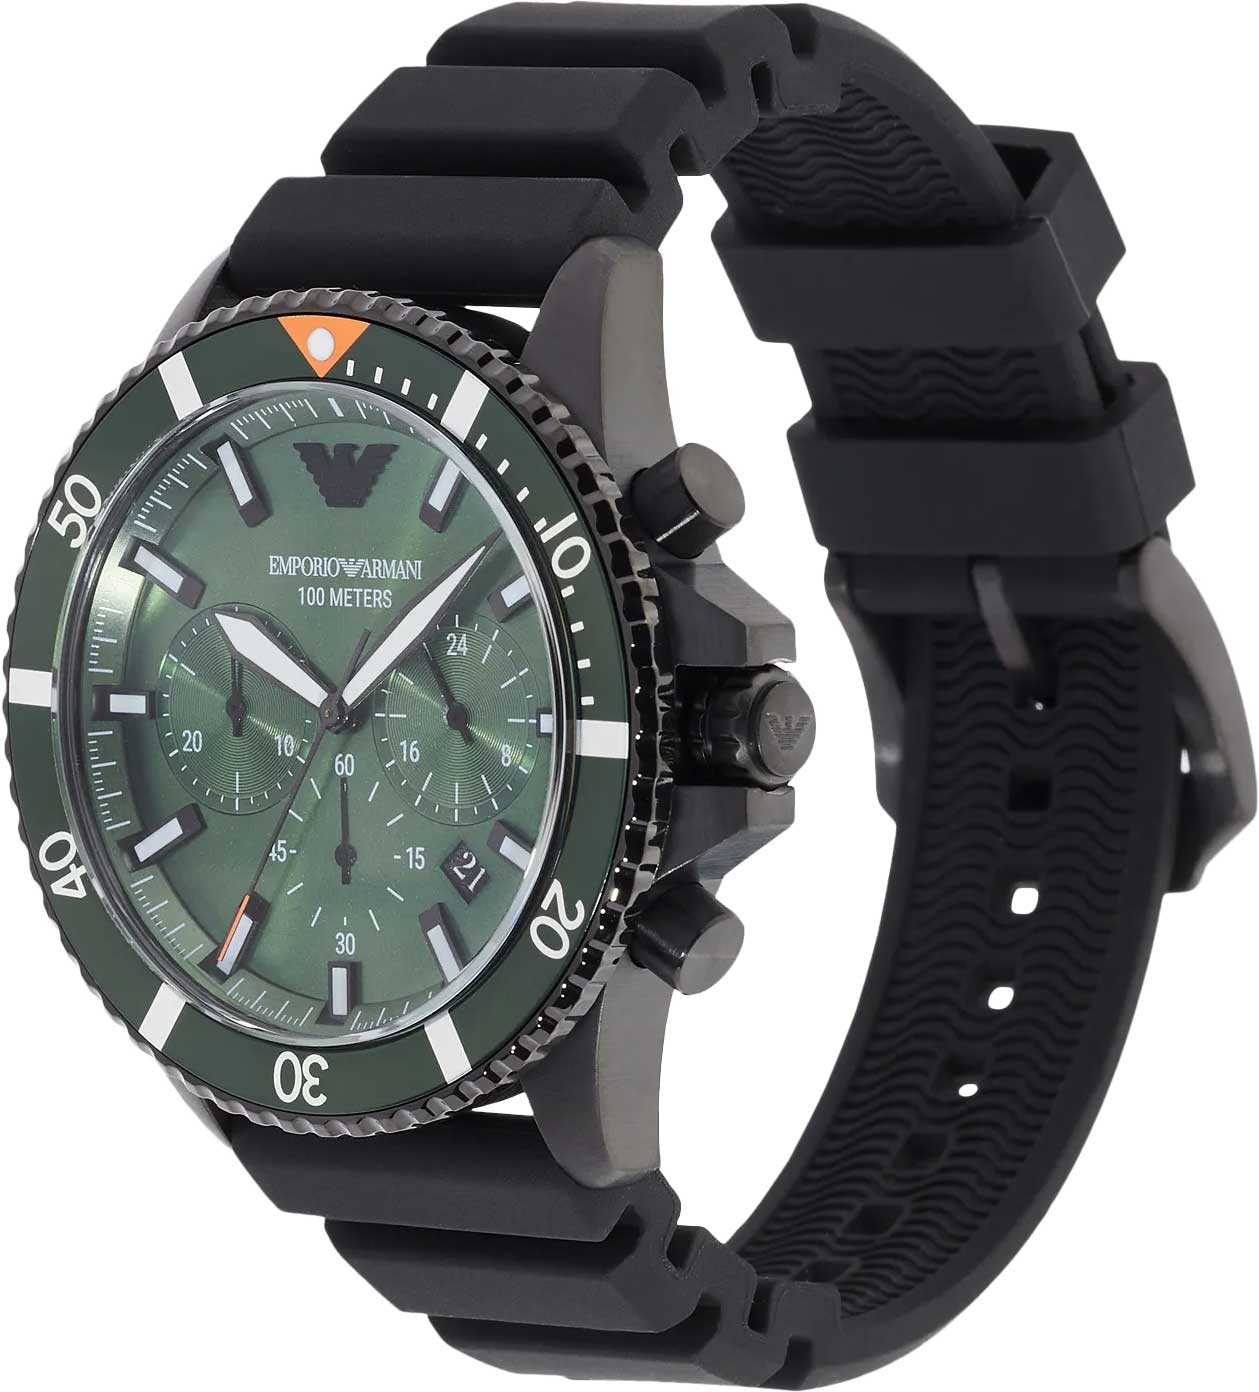 Мужские часы Emporio Armani Diver AR11463 - купить в интернет-магазине  3-15, цена, фото, характеристики и описание